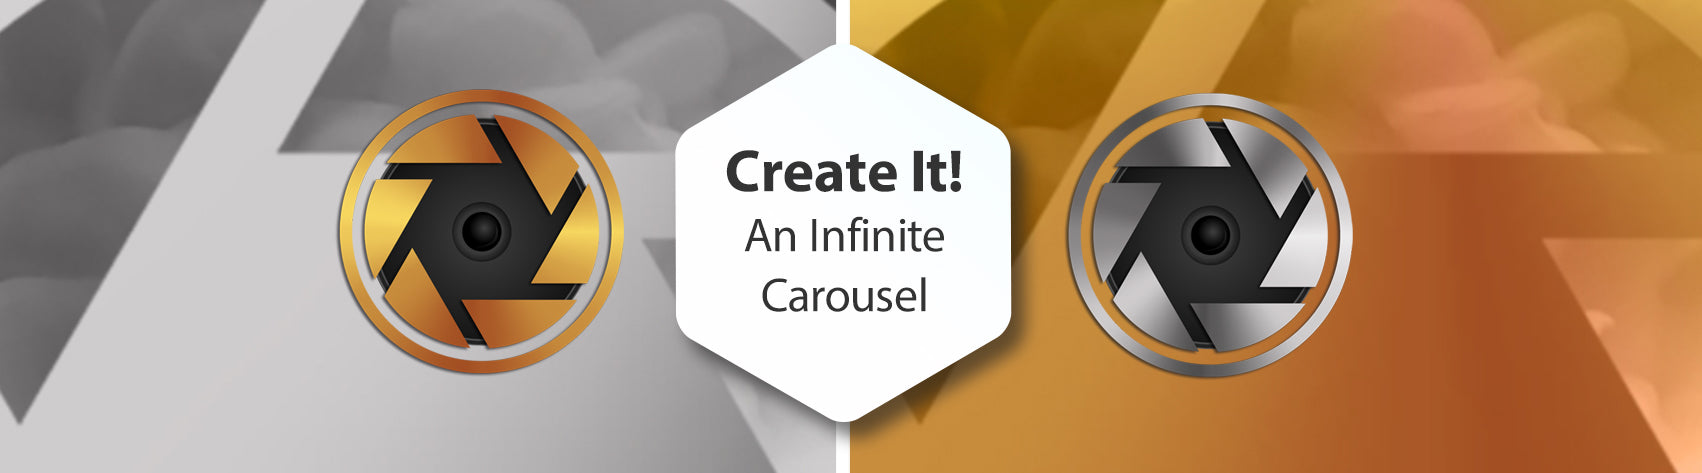 Create It! An Infinite Carousel